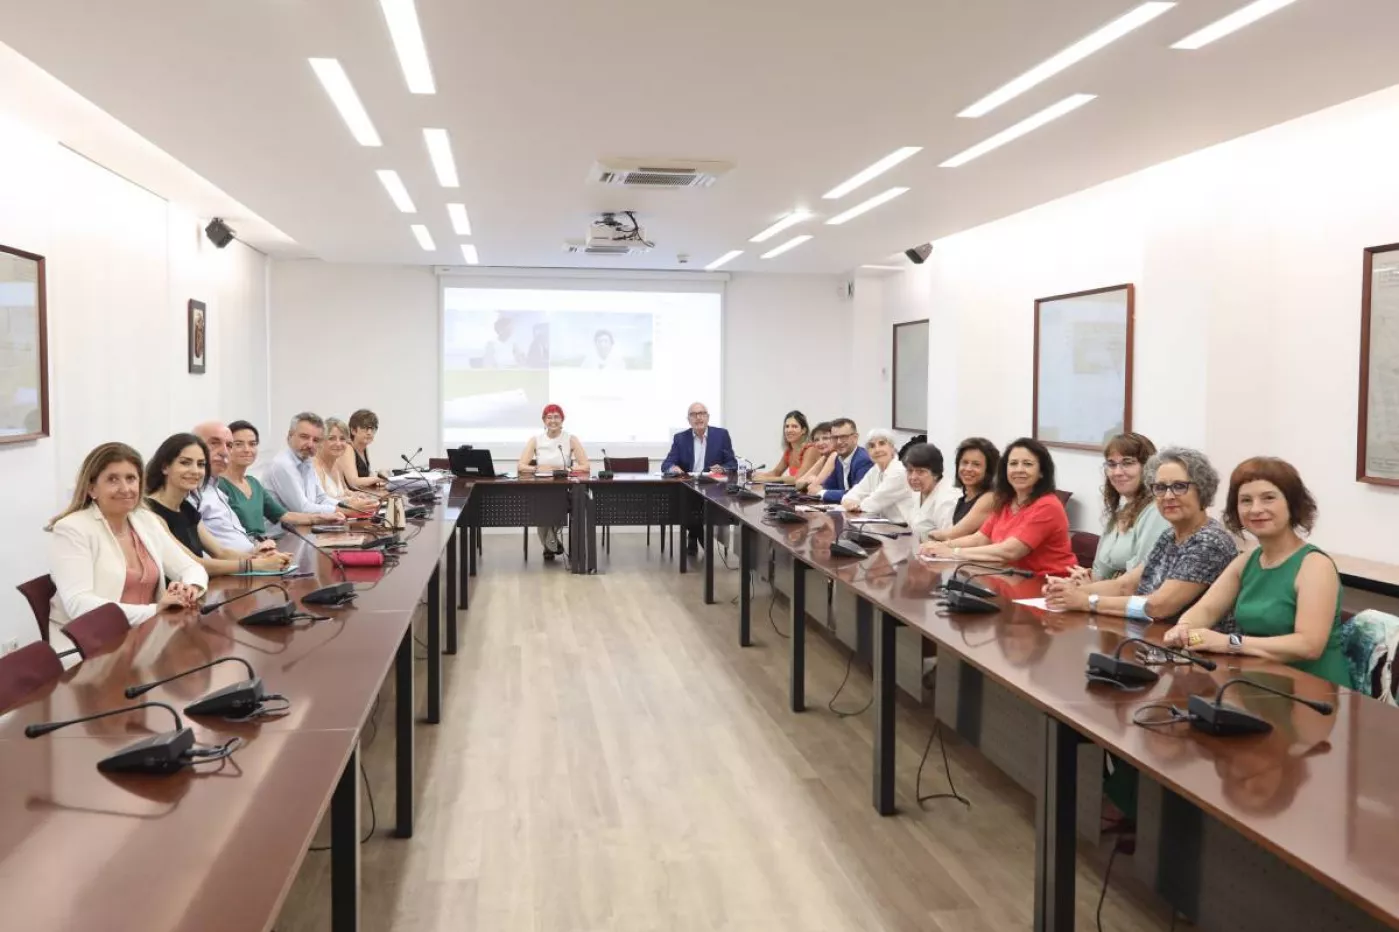 Primera reunión de constitución del Comité de Bioética de Navarra, que tuvo lugar el 17 de junio. Foto del Gobierno de Navarra.